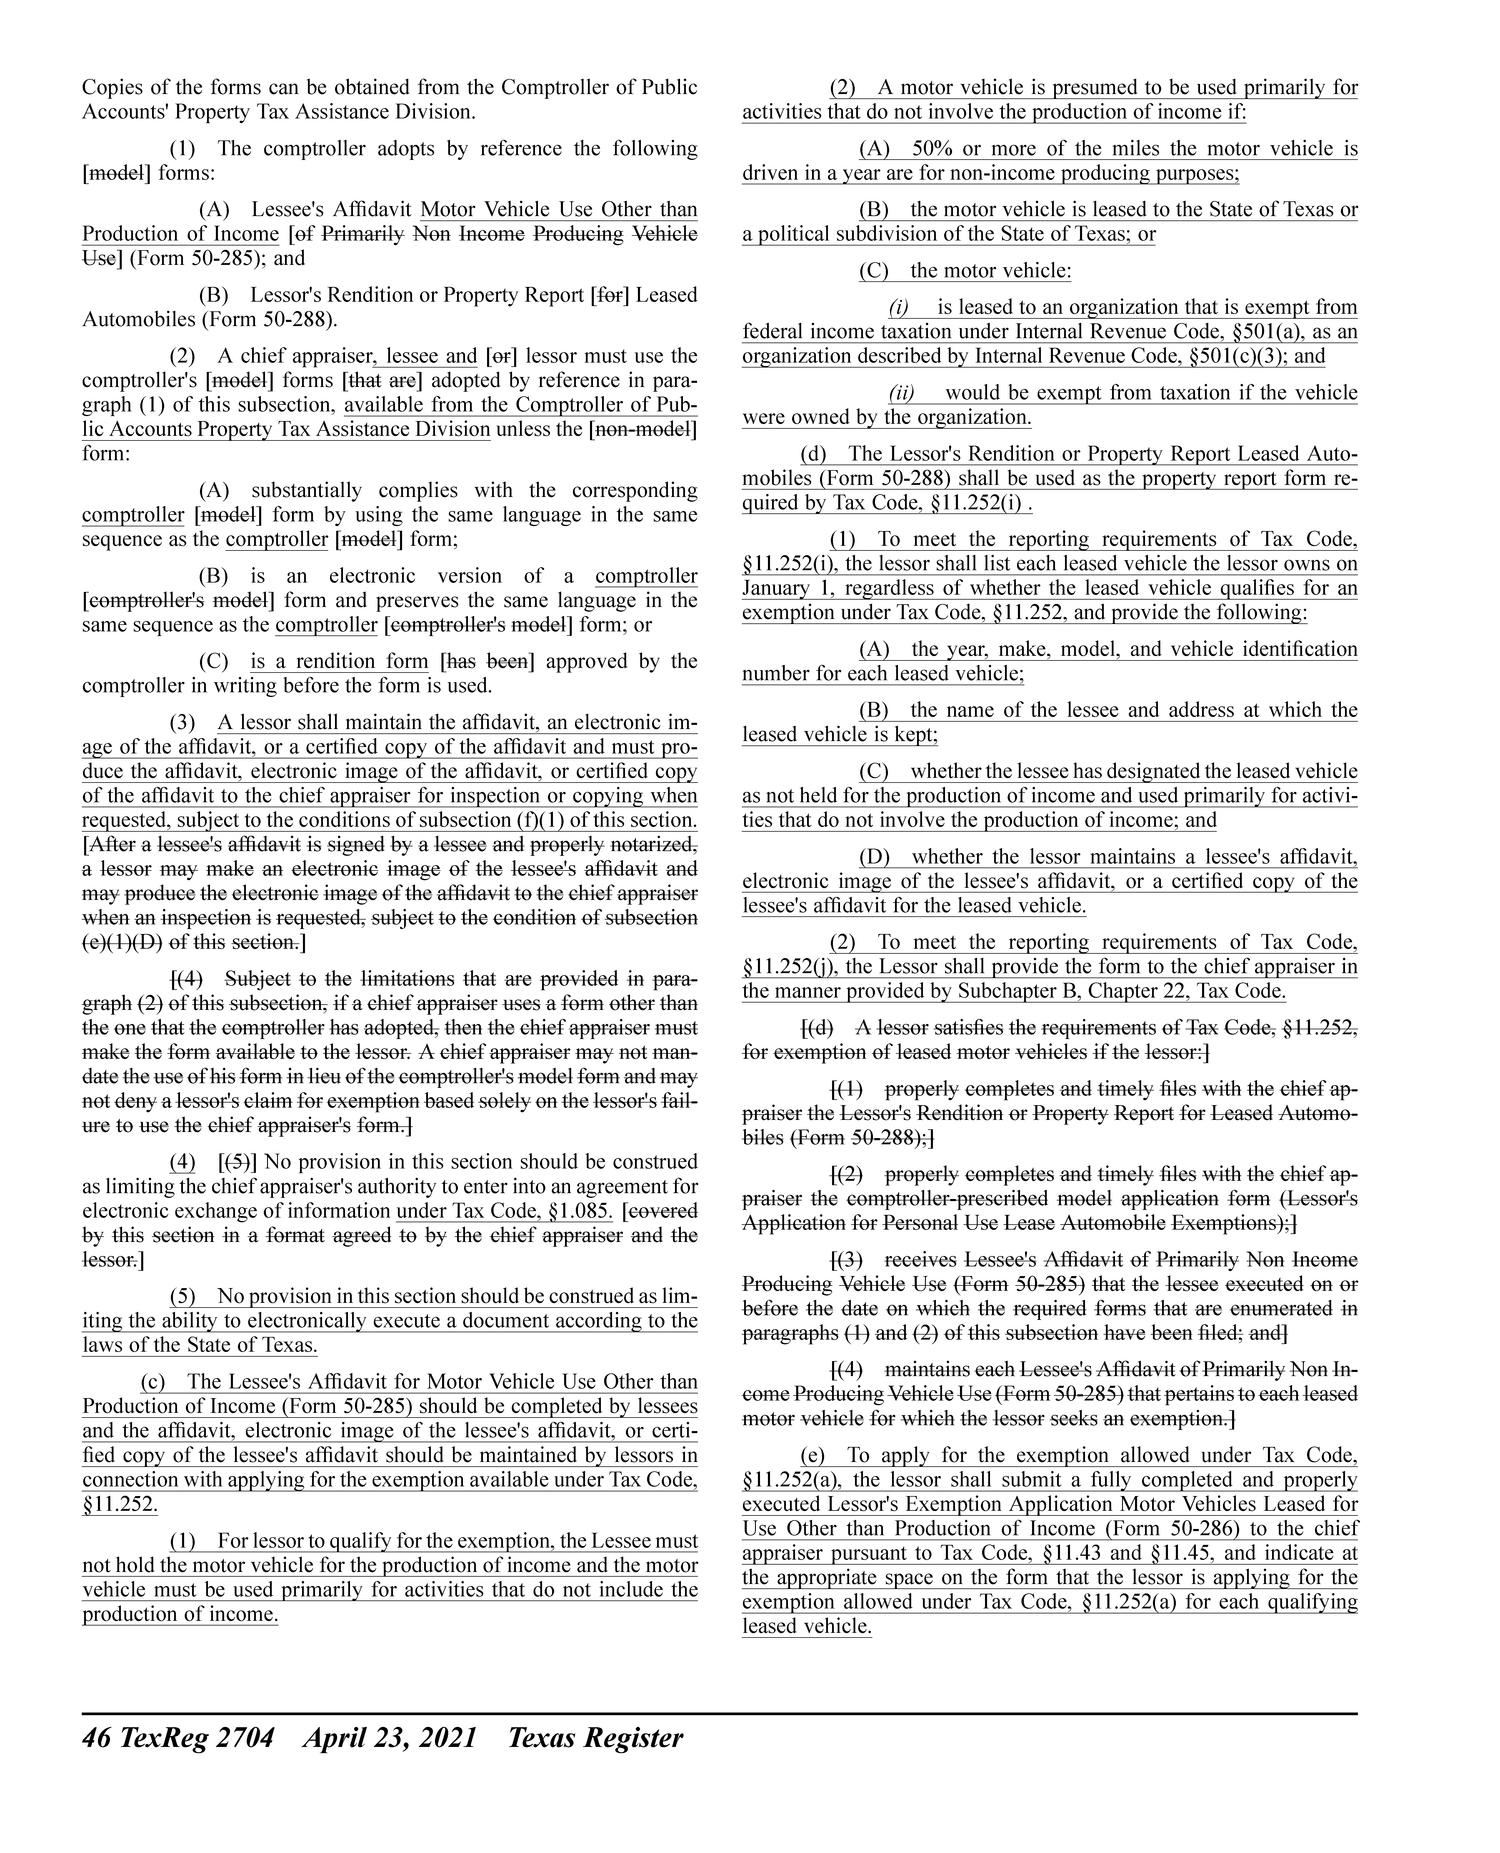 Texas Register, Volume 46, Number 17, Pages 2627-2862, April 23, 2021
                                                
                                                    2704
                                                